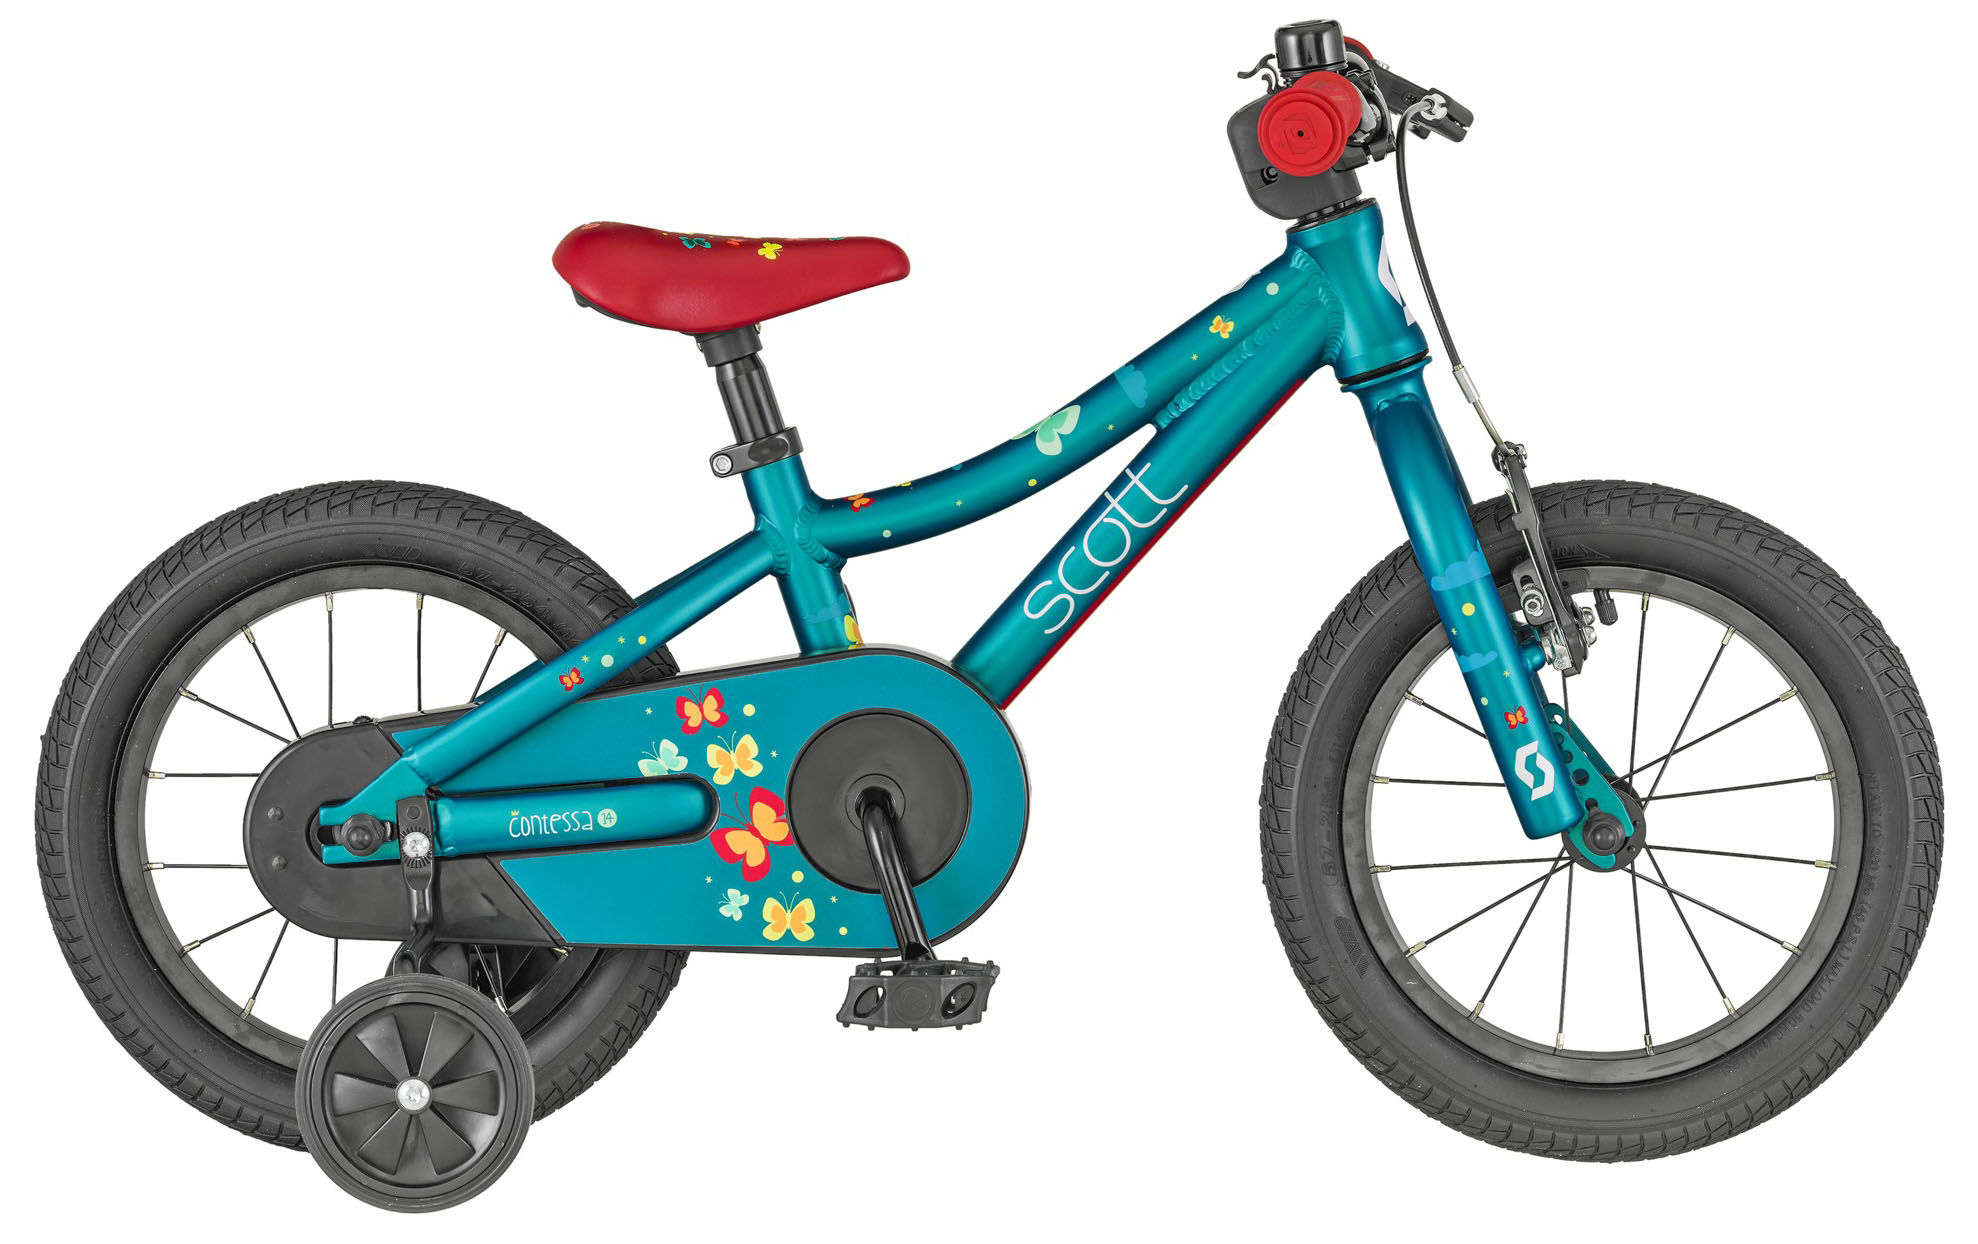  Отзывы о Детском велосипеде Scott Contessa 14 2019